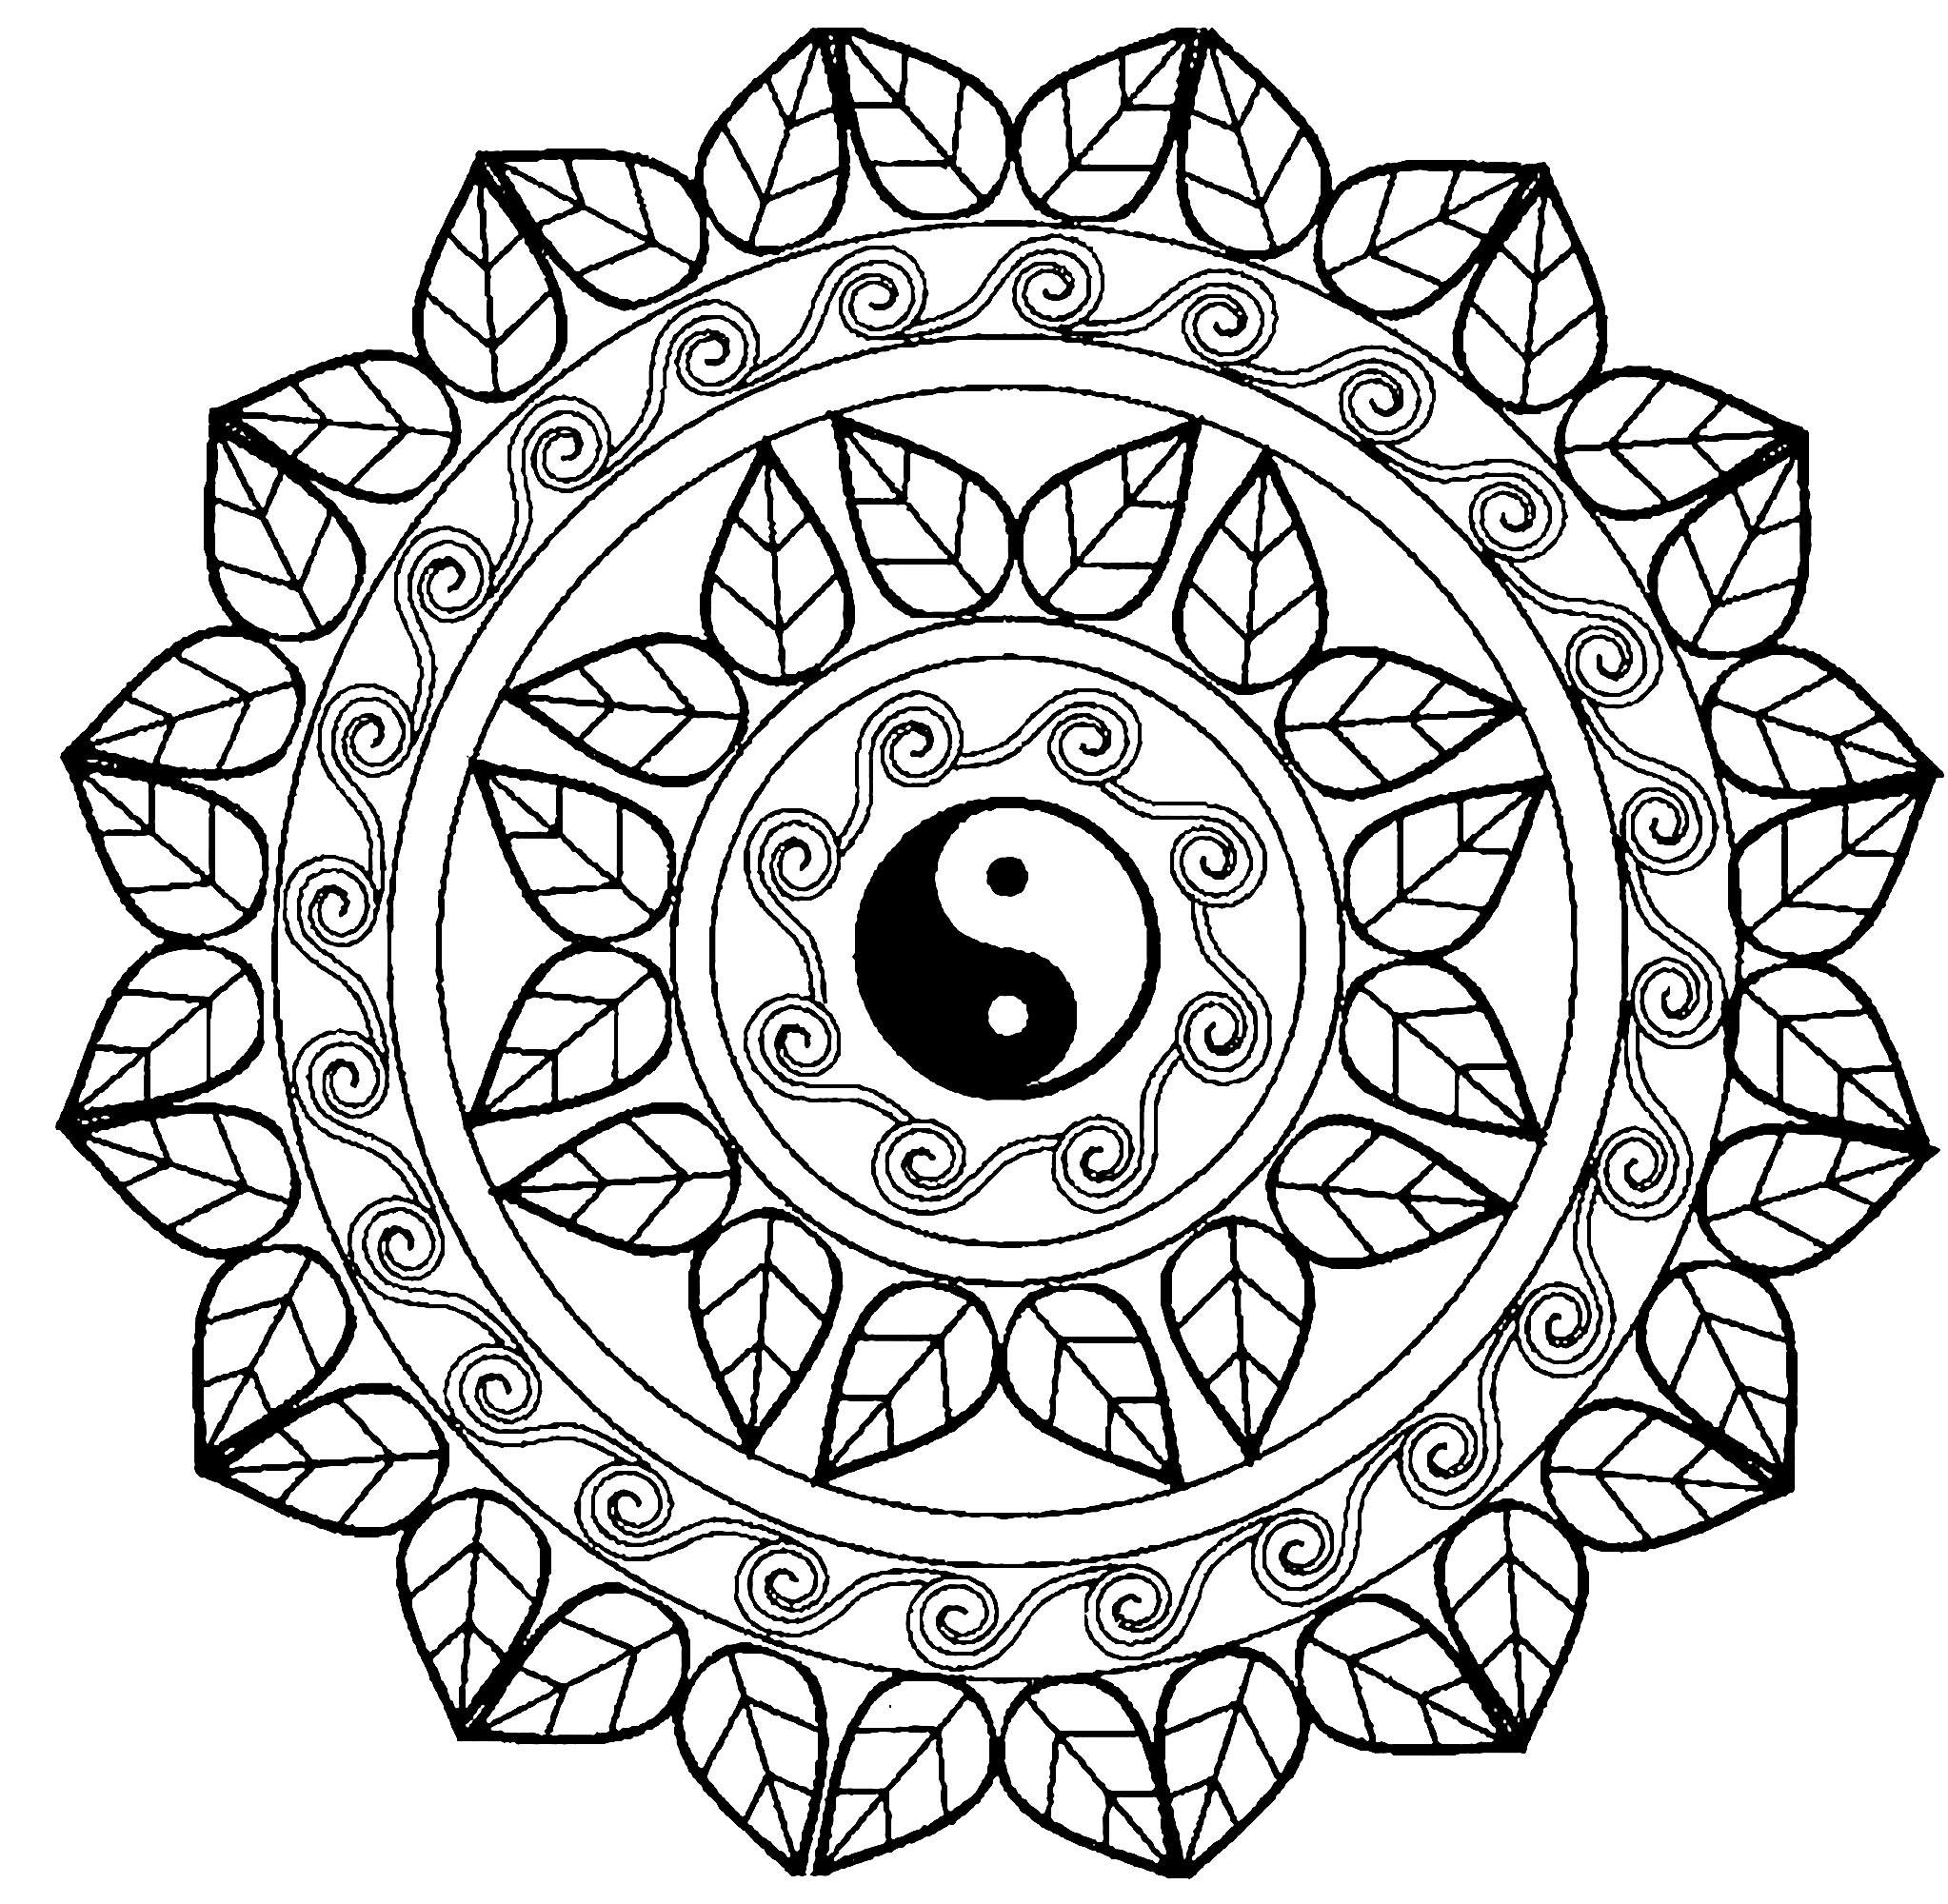 Scegliete la tecnica che preferite per colorare questo esclusivo Mandala con il famoso simbolo Yin & Yang al centro! Aggiungete la vostra anima a questo bellissimo Mandala.